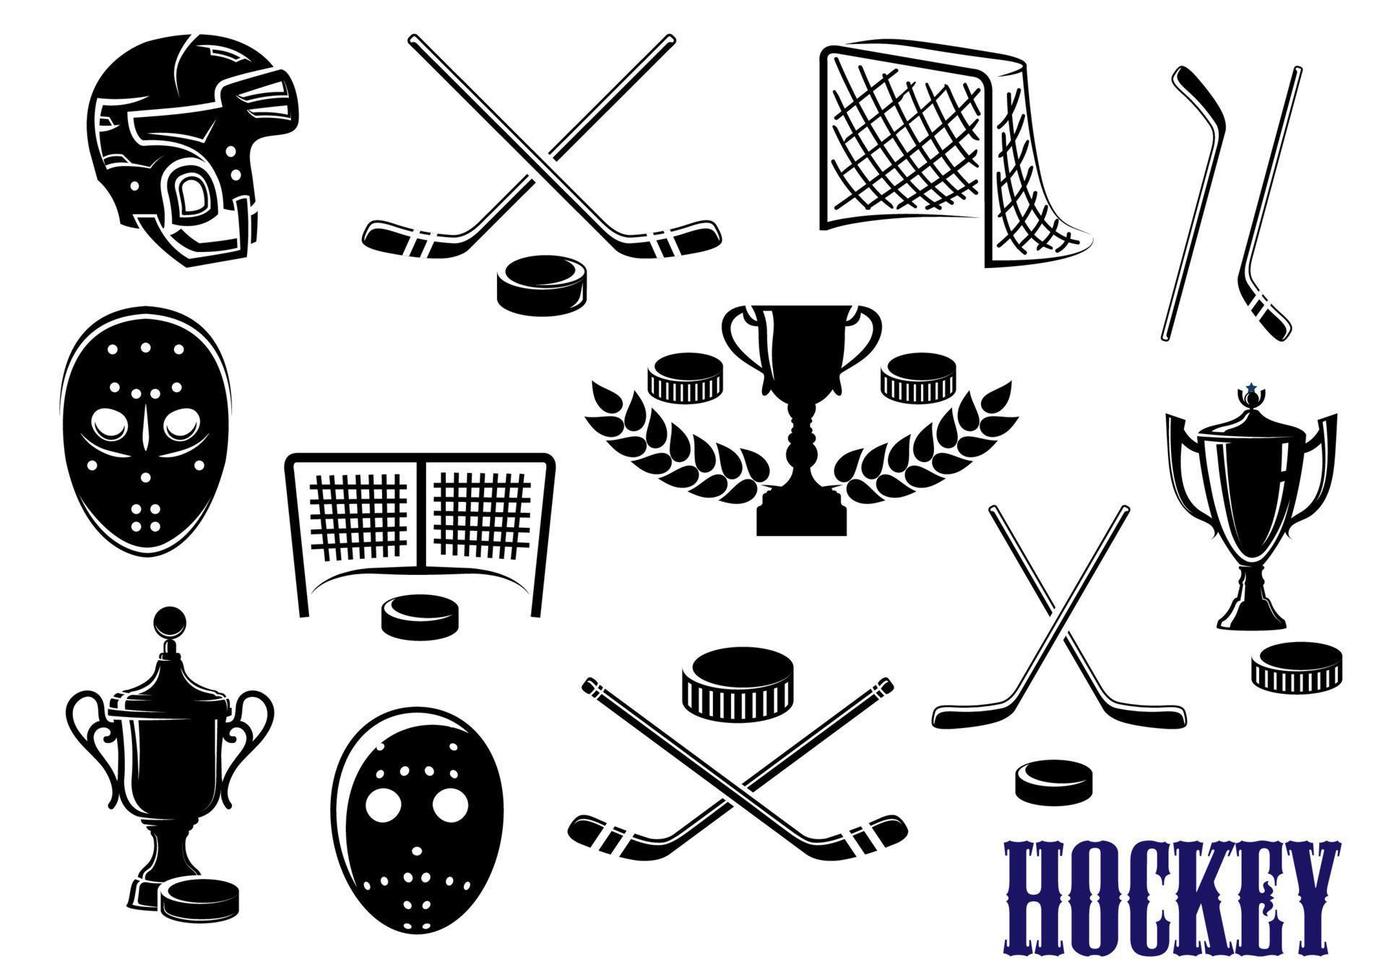 ijs hockey pictogrammen met onderschrift hockey vector